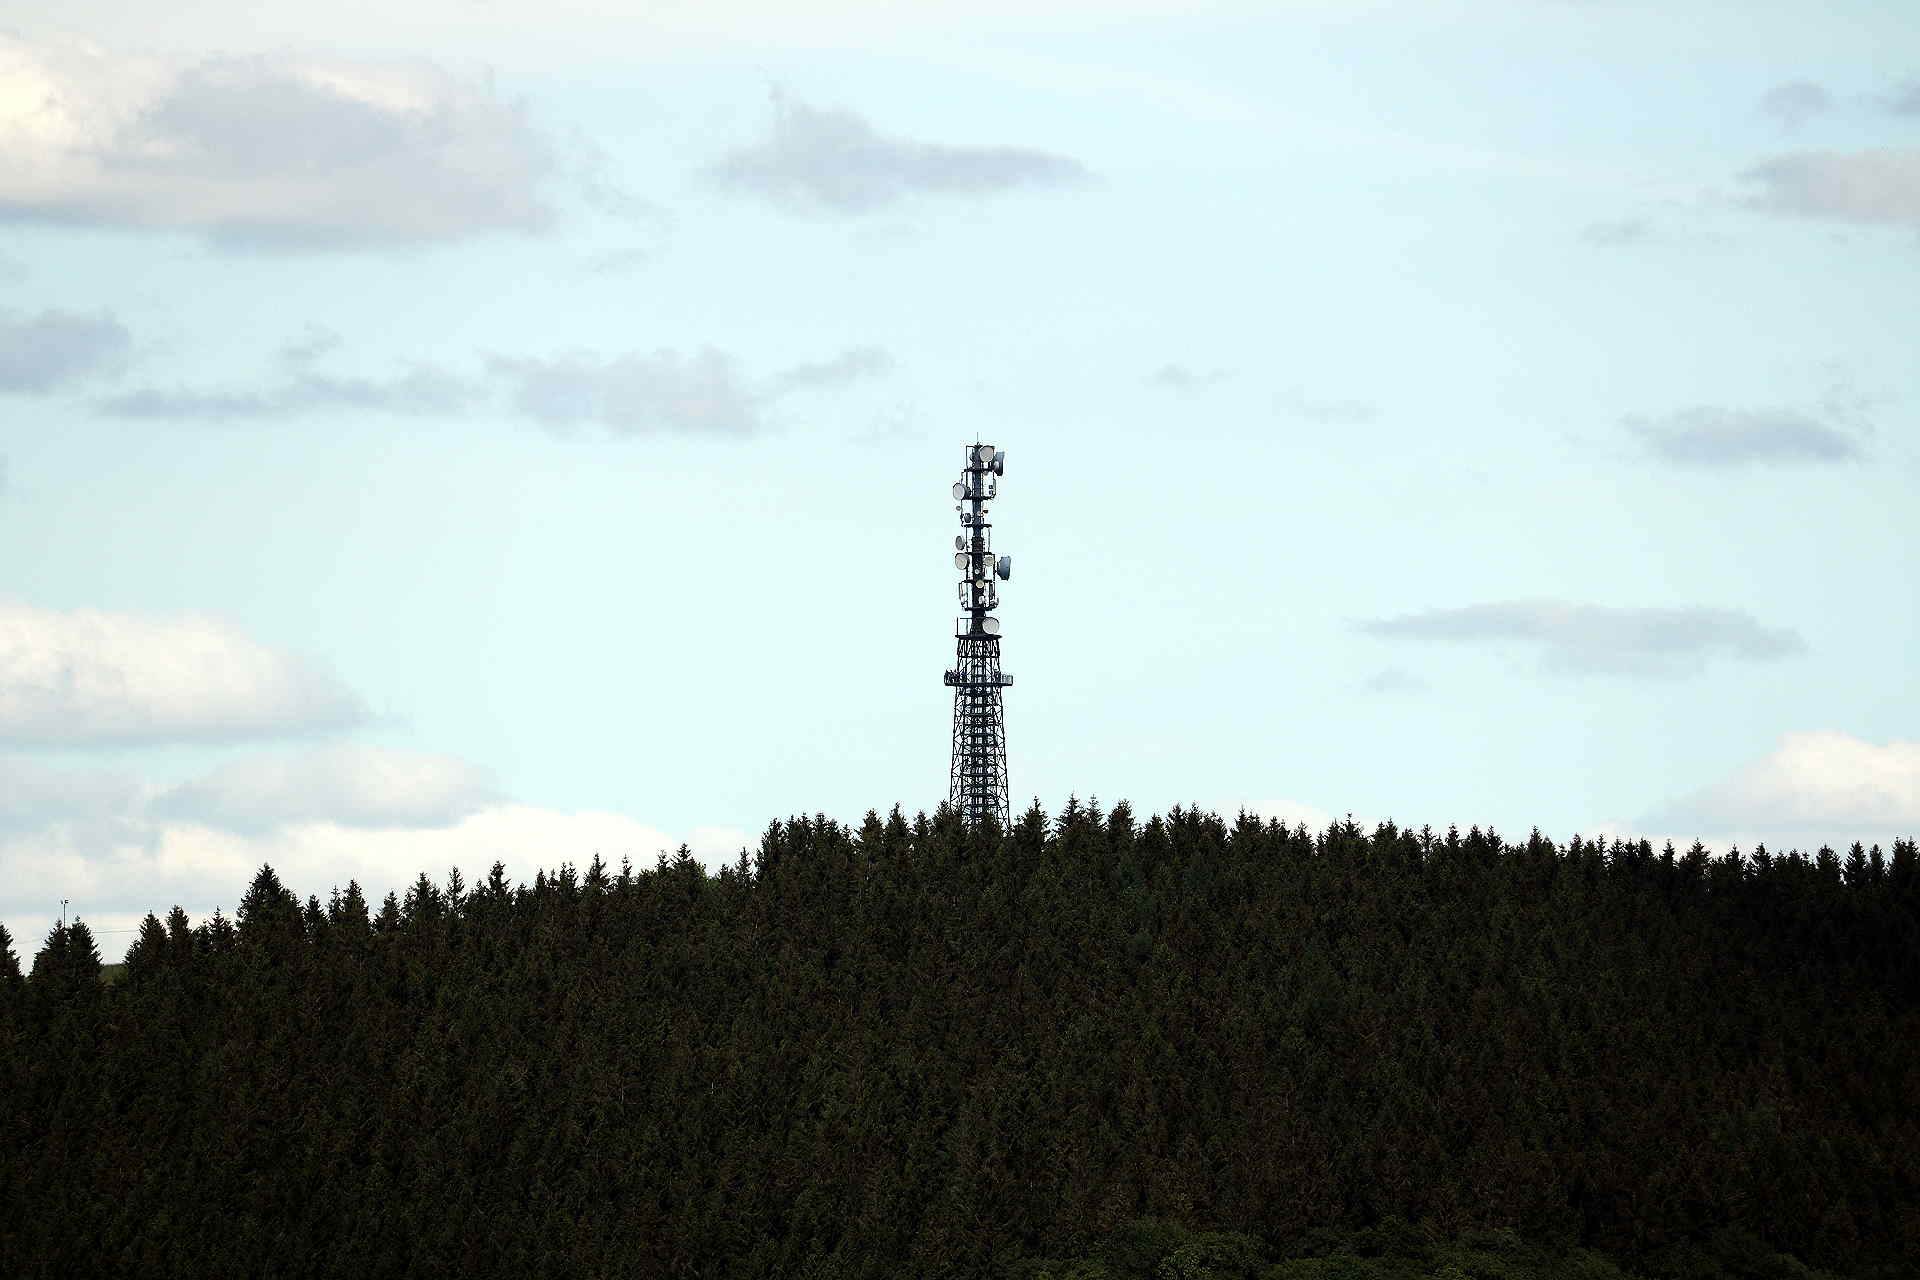 Der Schombergturm in Wildewiese, den man vom Oberbecken des Pumpspeicherwerkes gut sehen kann. © altais.de